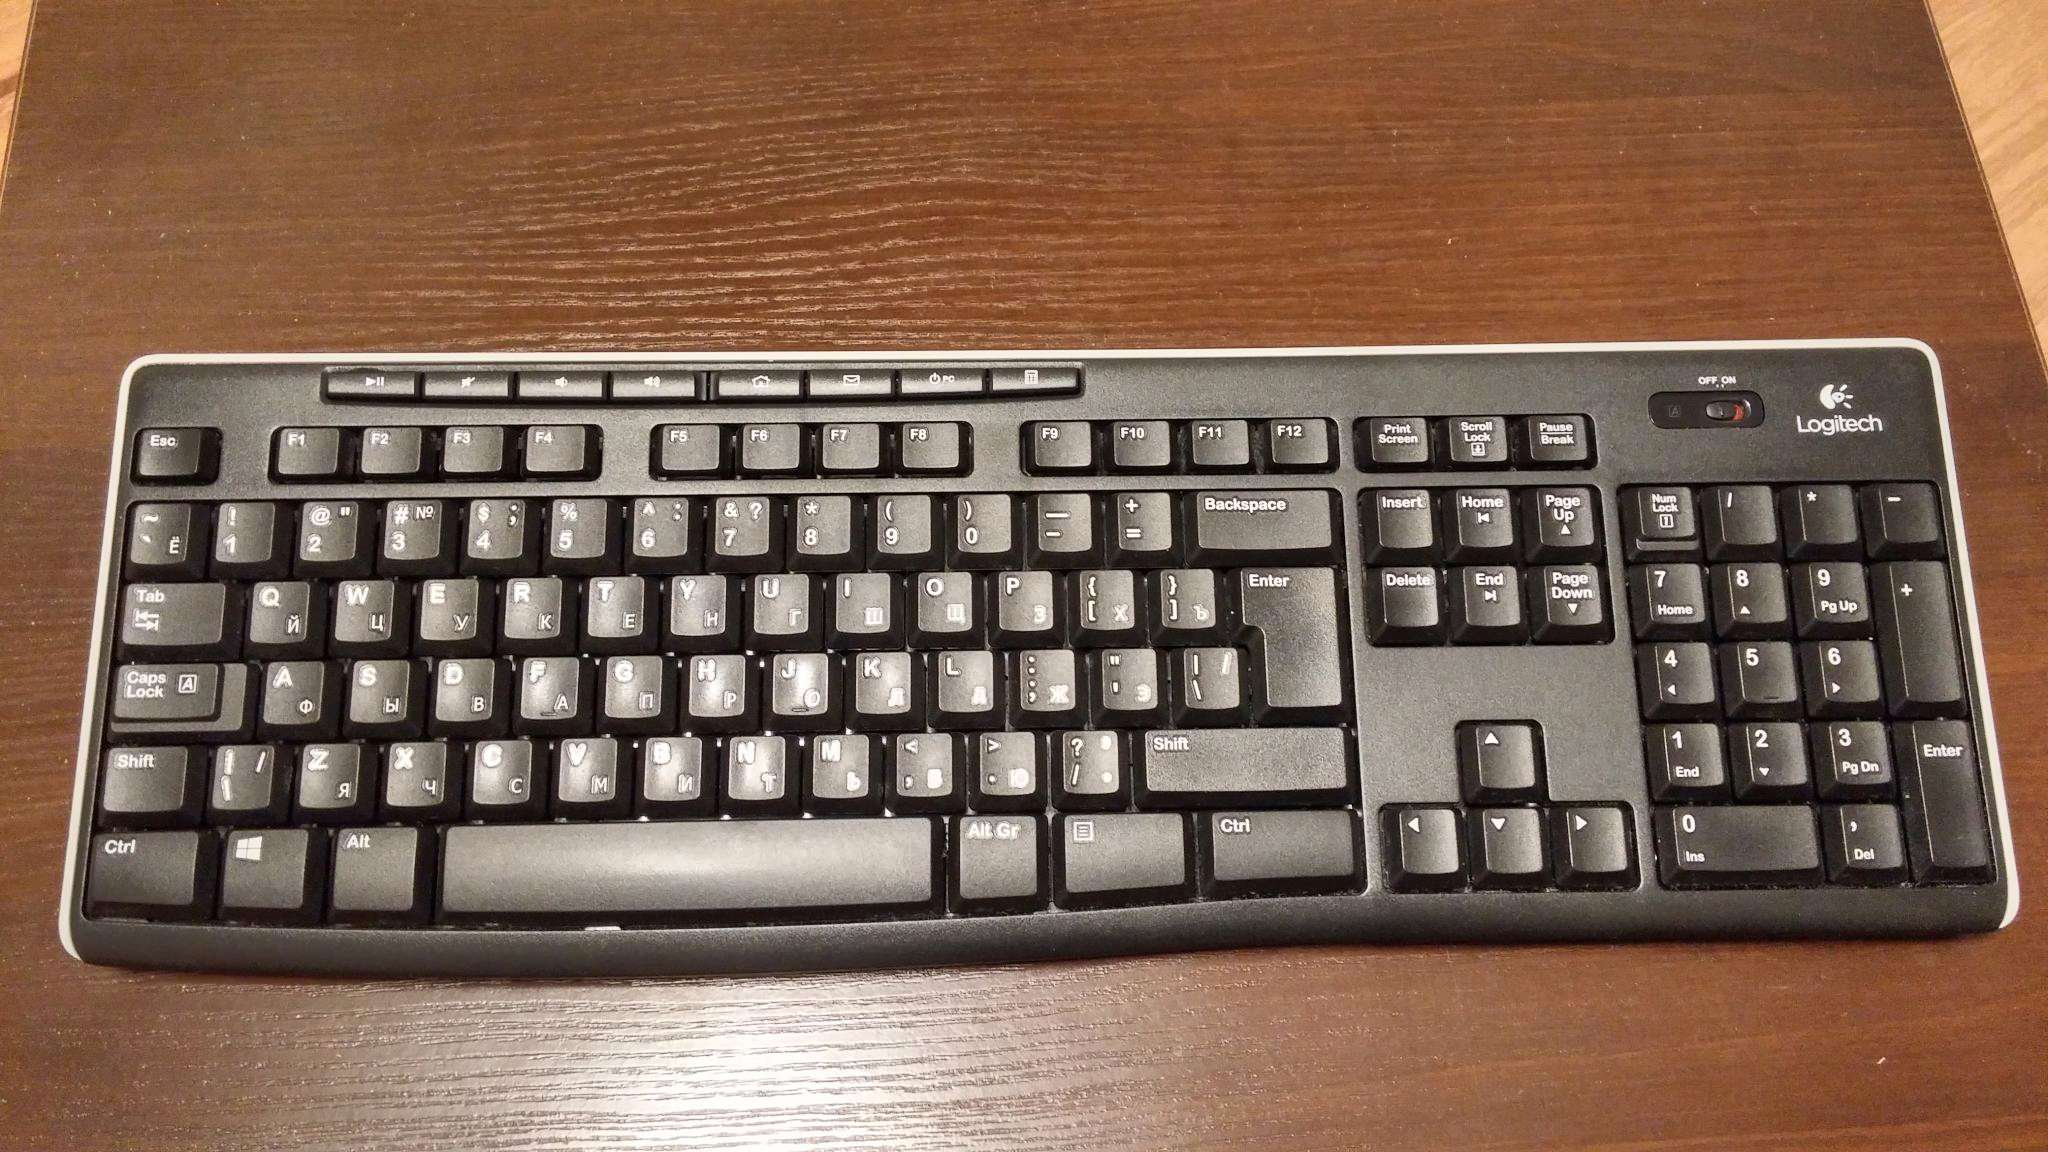 фото русской клавиатуры компьютера